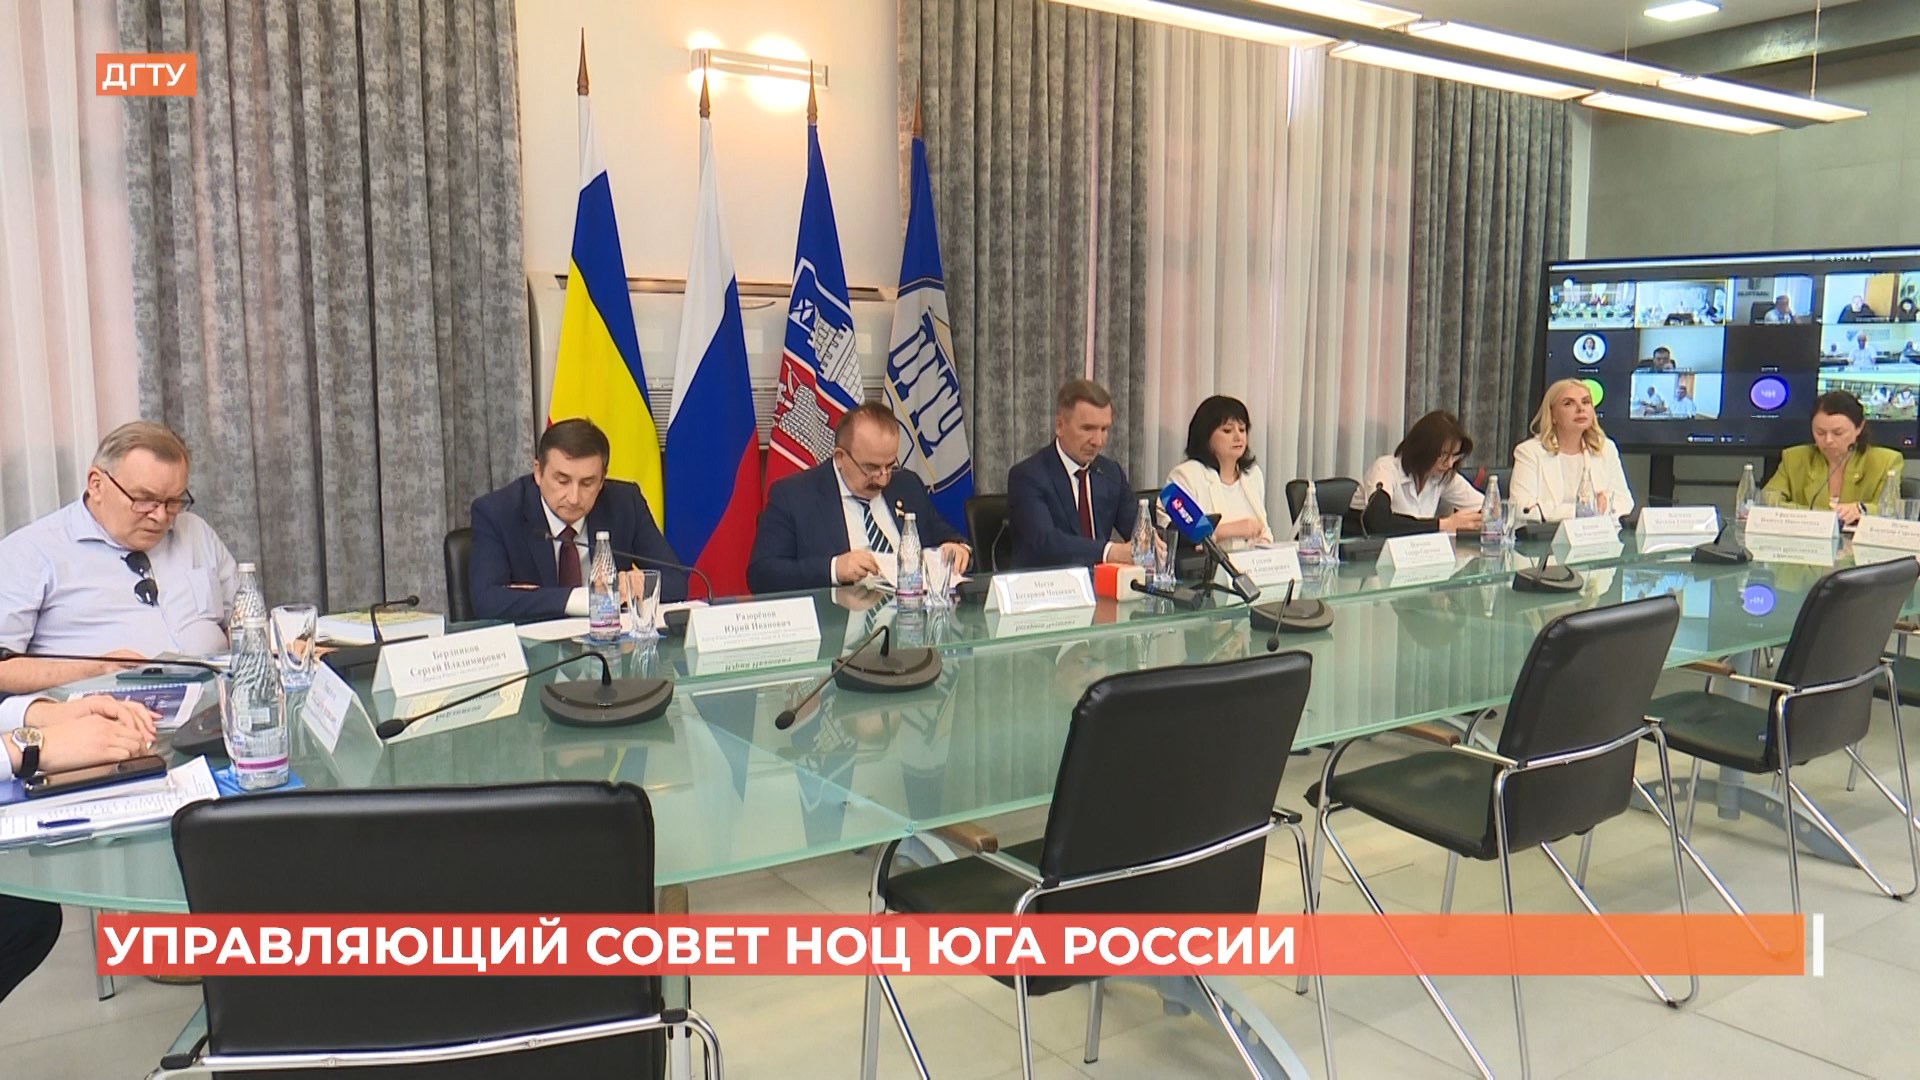 Заседание управляющего совета НОЦ юга России провели по видеосвязи с коллегами из соседних регионов